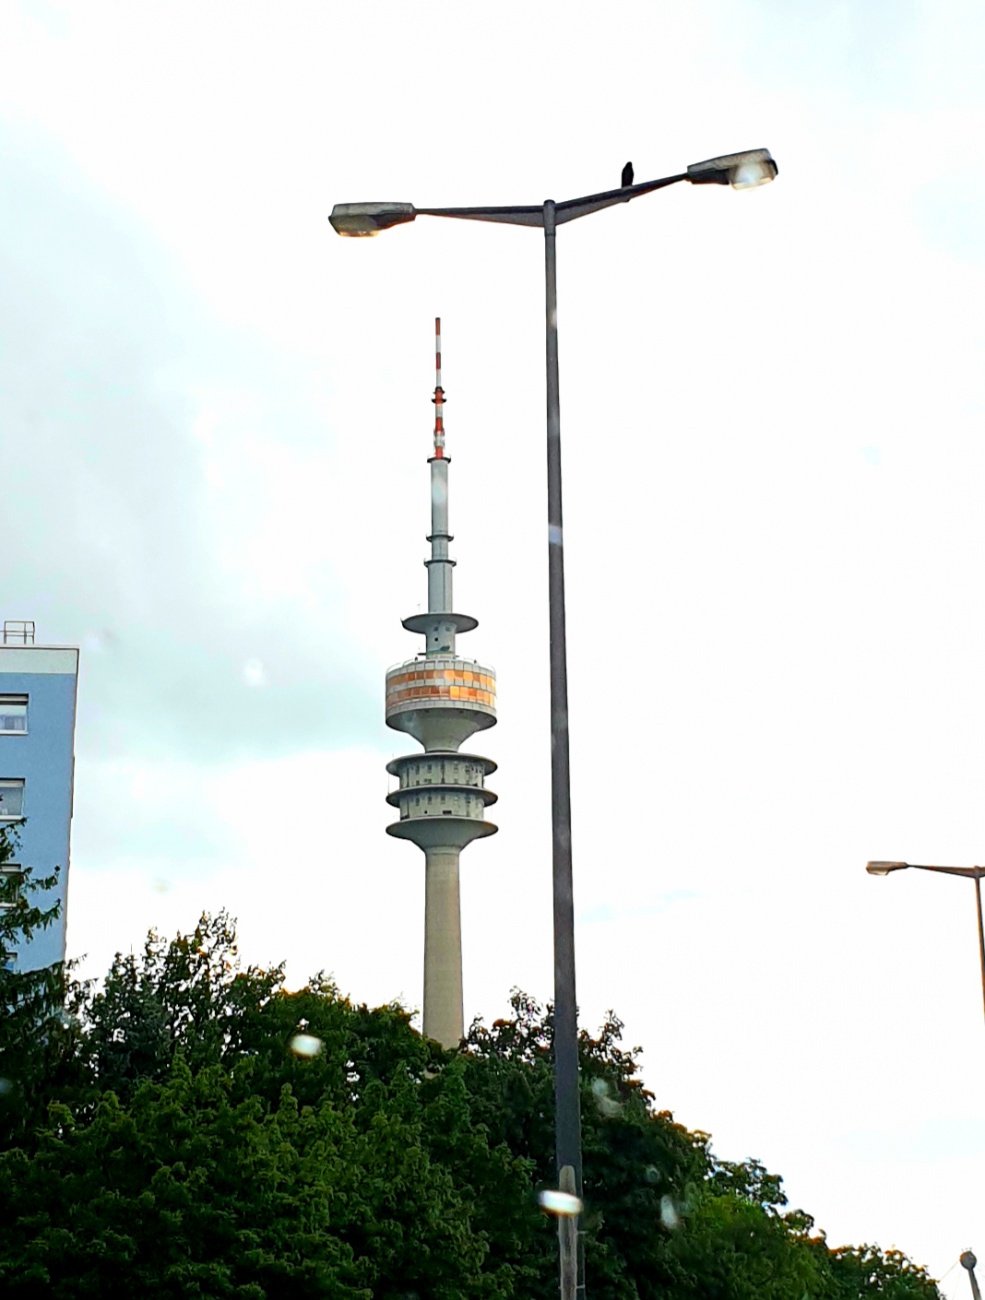 Foto: Martin Zehrer - Der Olympiaturm in München...<br />
<br />
291 Meter hoch und Ende der 1960er Jahre erbaut. 